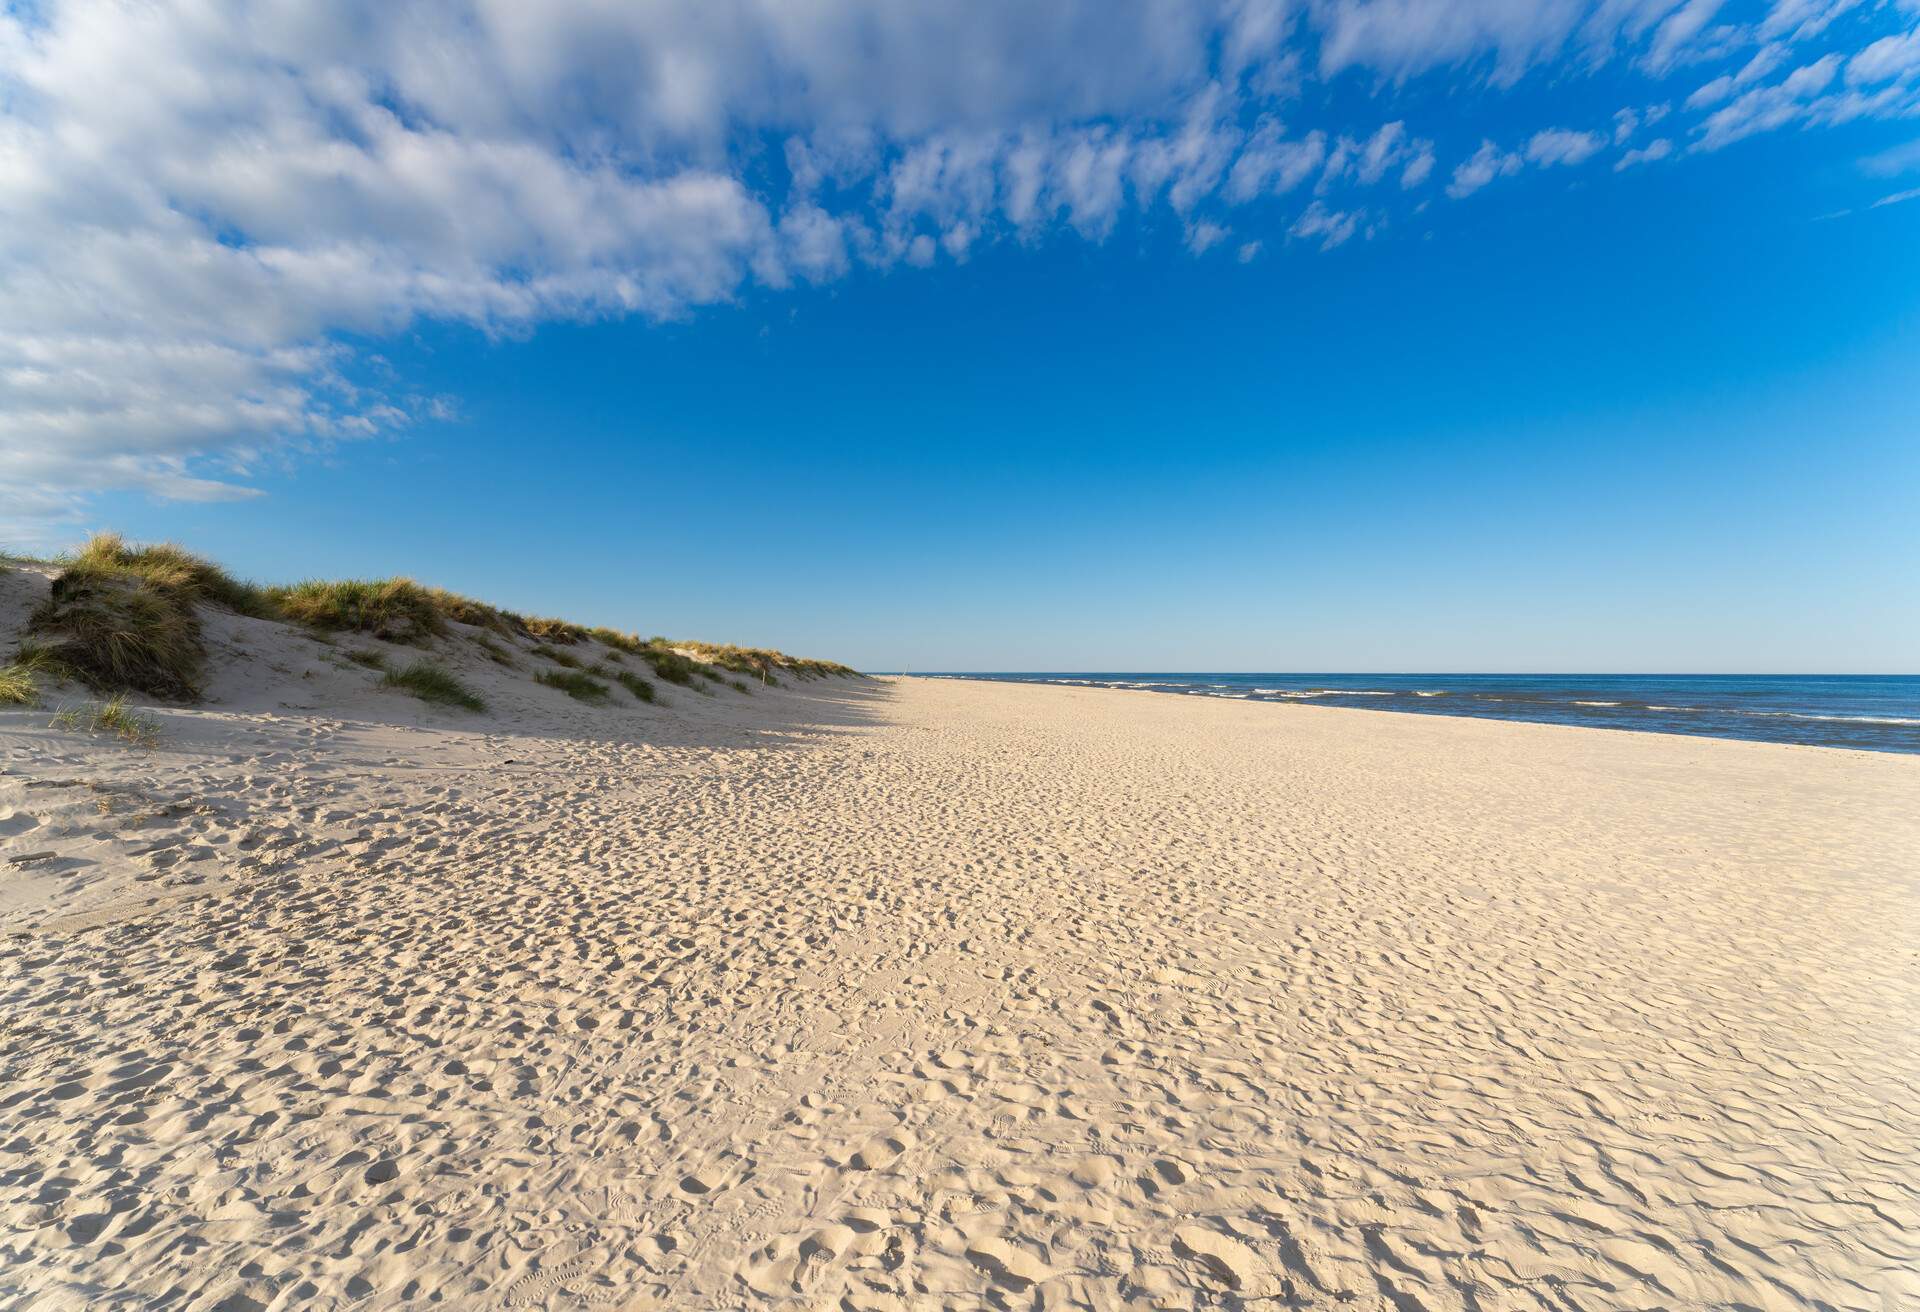 Amazing white sand beach in Sandhammaren, Sweden. Popular tourist destination in summer season.